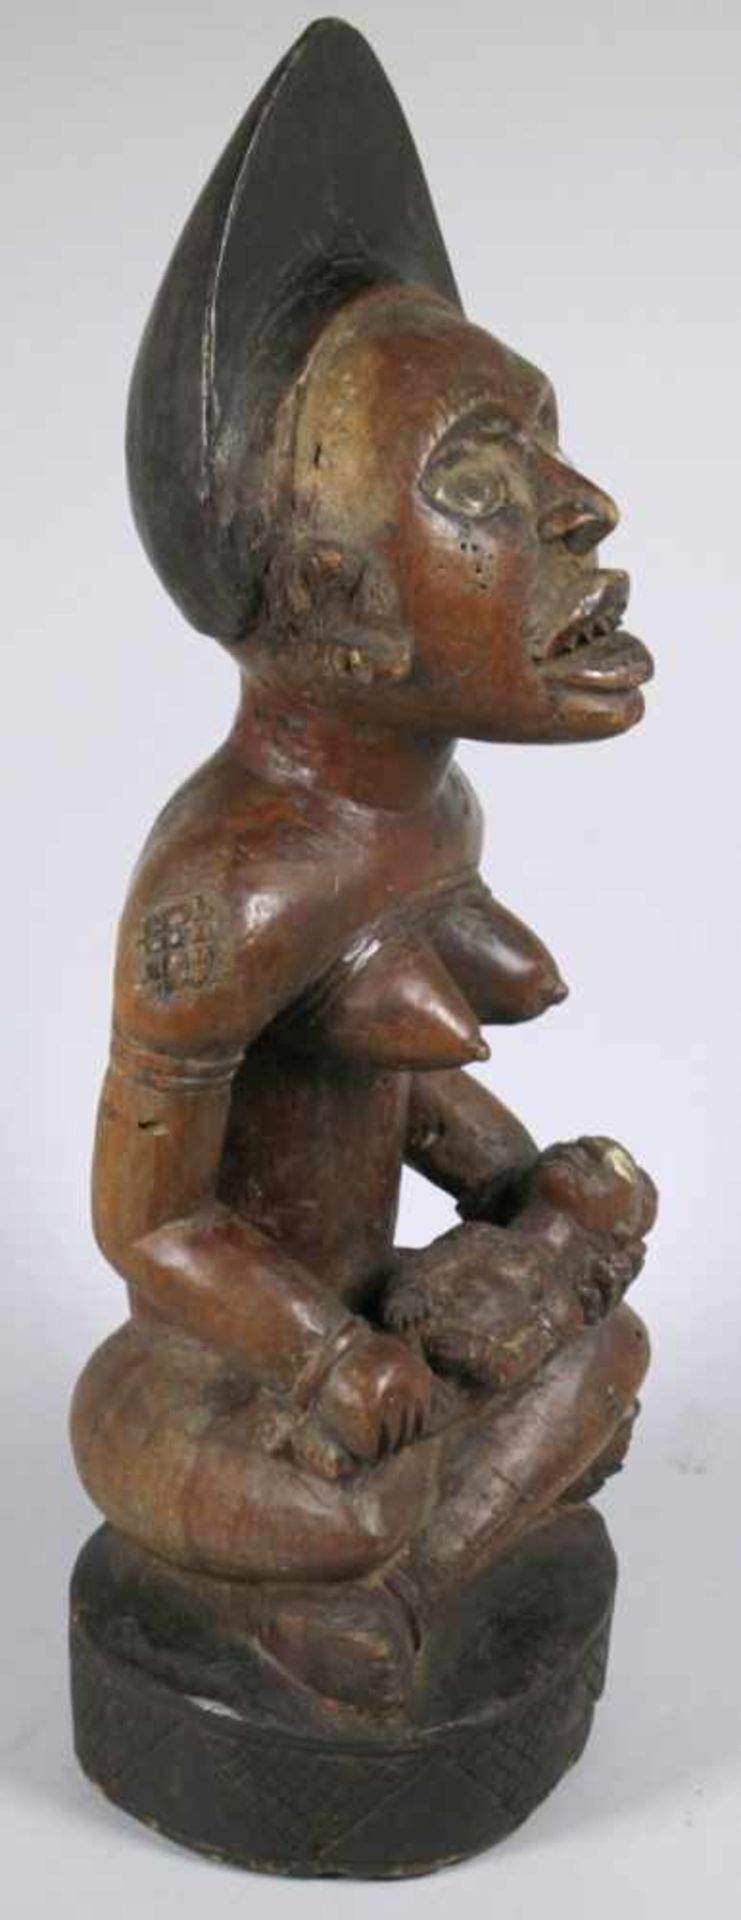 Mutter-Figur, Yombe, Kongo, auf Ovalsockel im Schneidersitz hockende, plastische,weibliche - Bild 2 aus 3